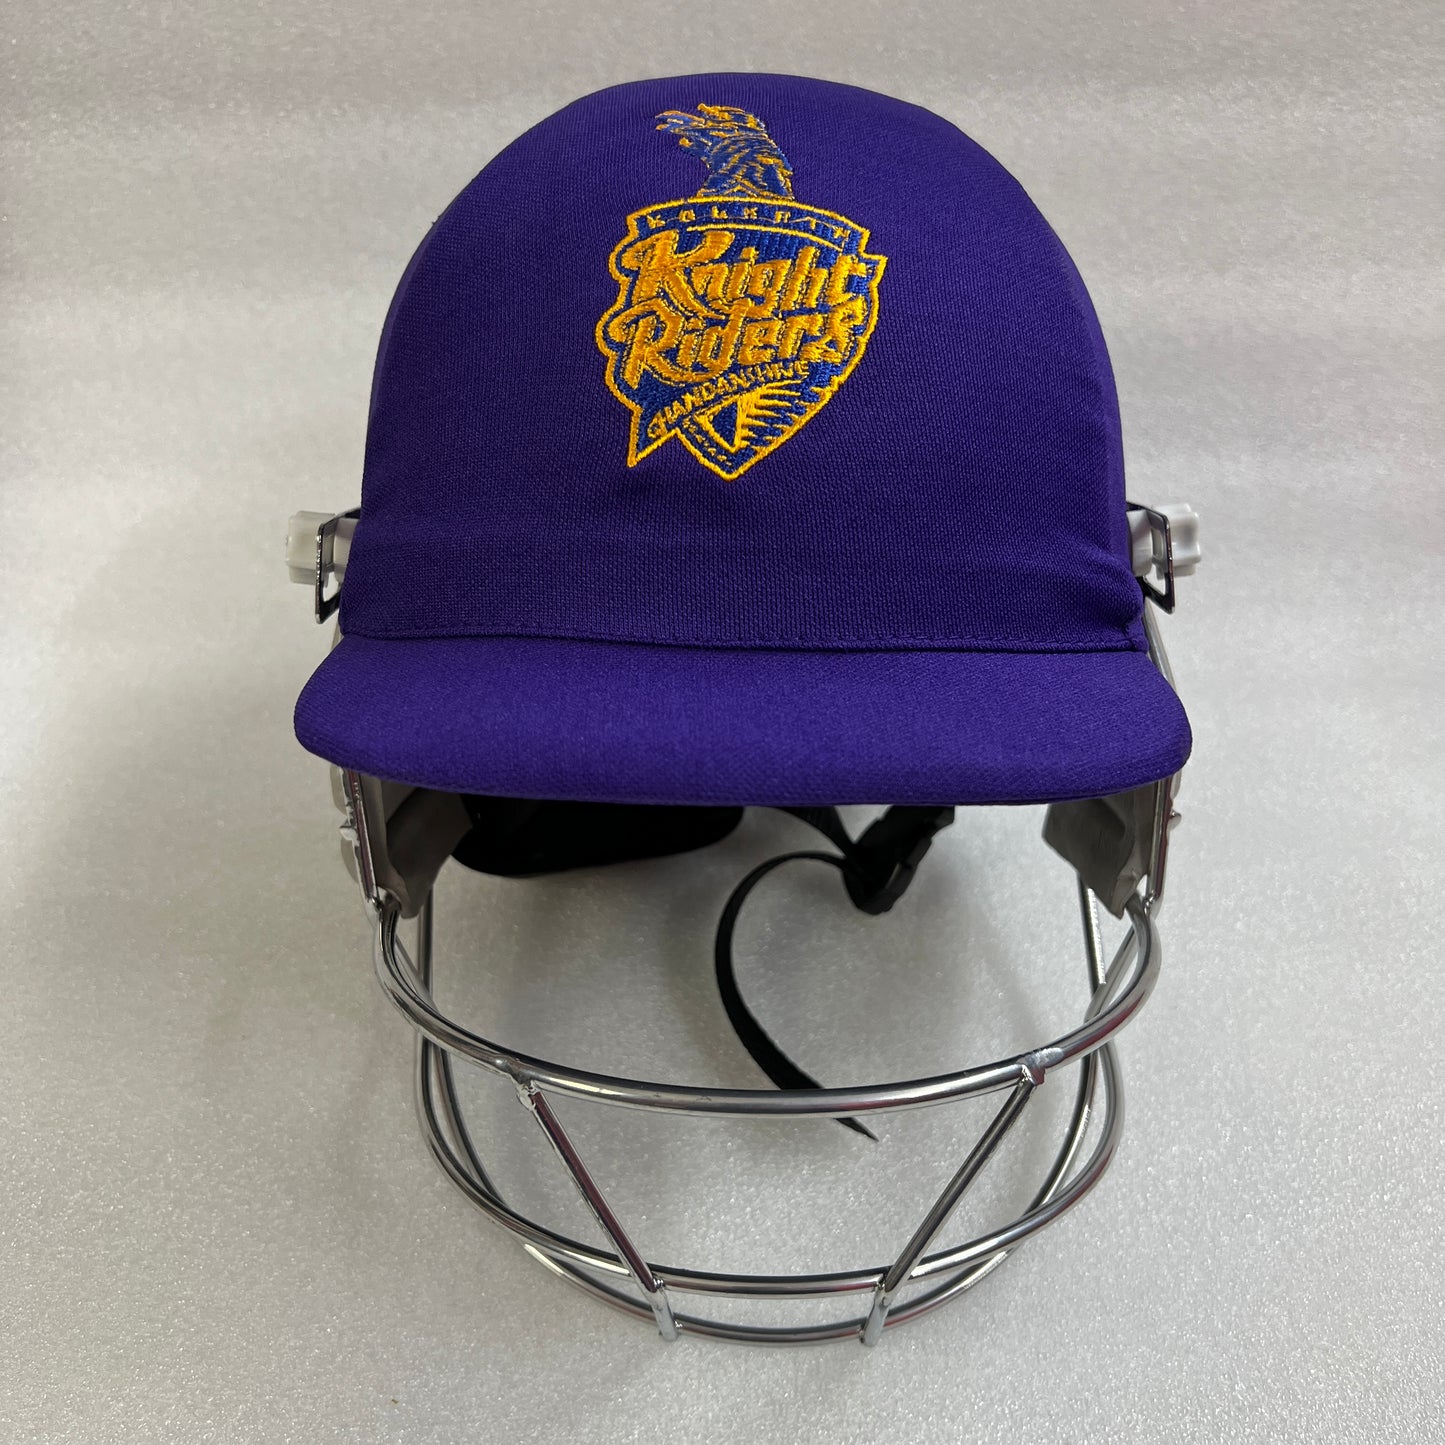 Black Ash custom IPL adjustable helmet